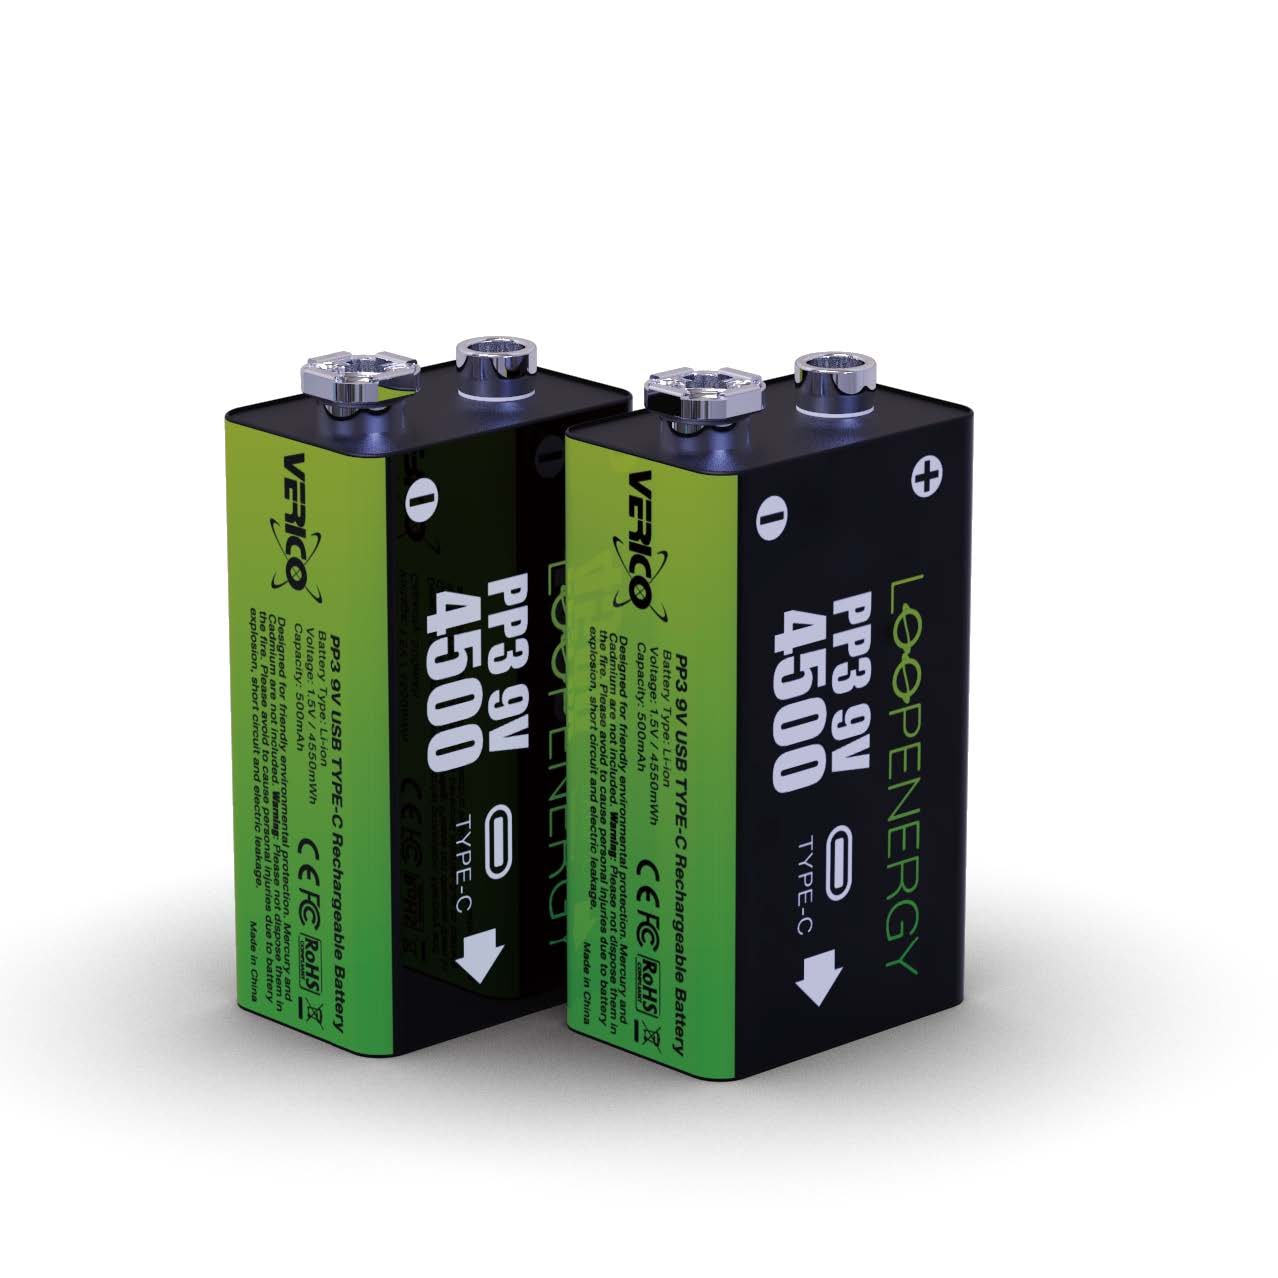 Batterie »Loopenergy 9V (Block)«, 1,5 V, (2 St.), USB-C Kabel im Lieferumfang